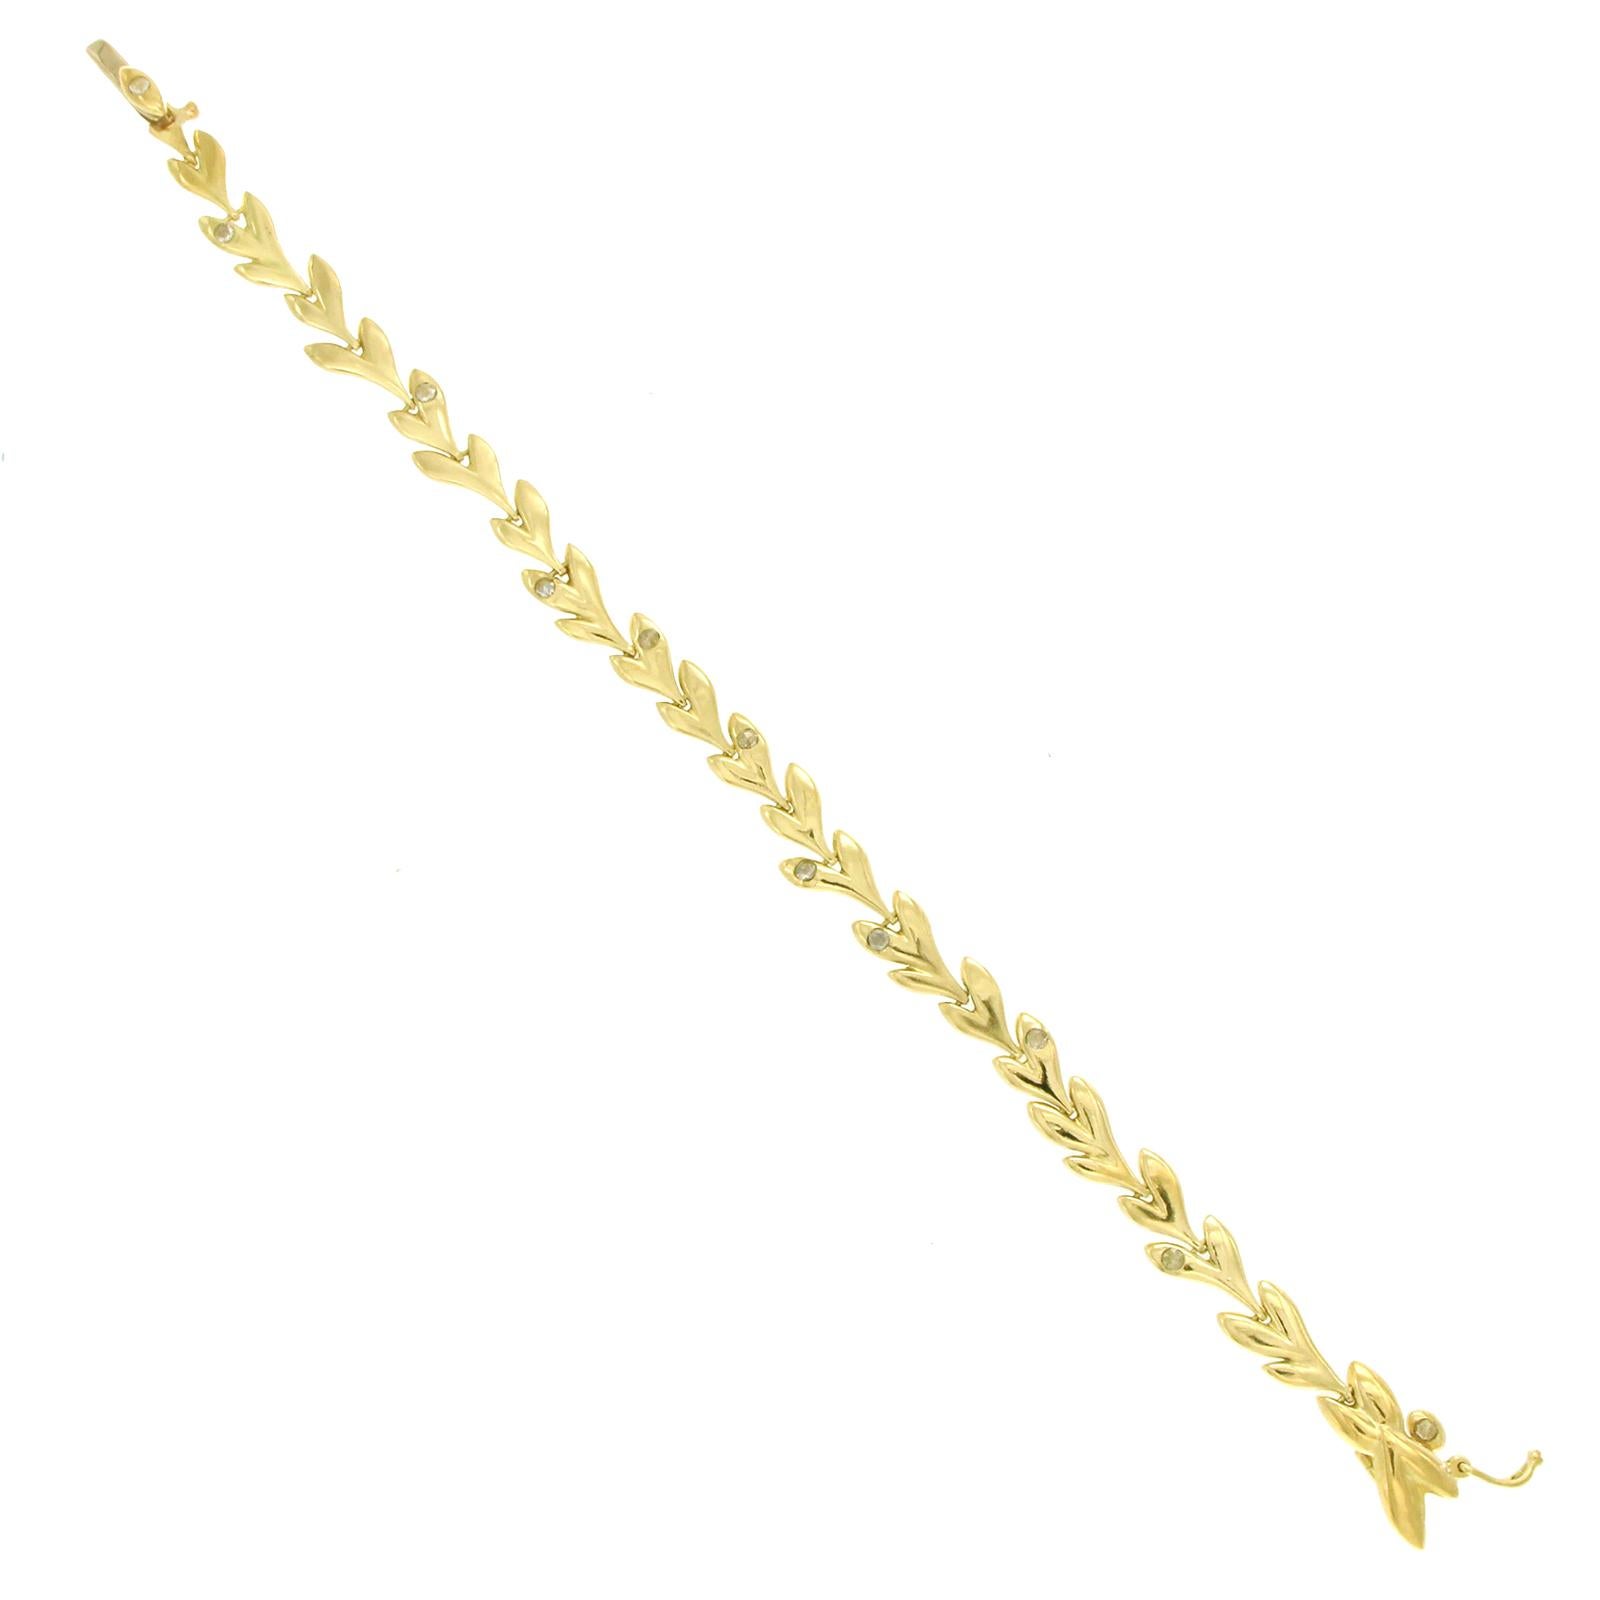 Type: Bracelet
Wearable Length: 7